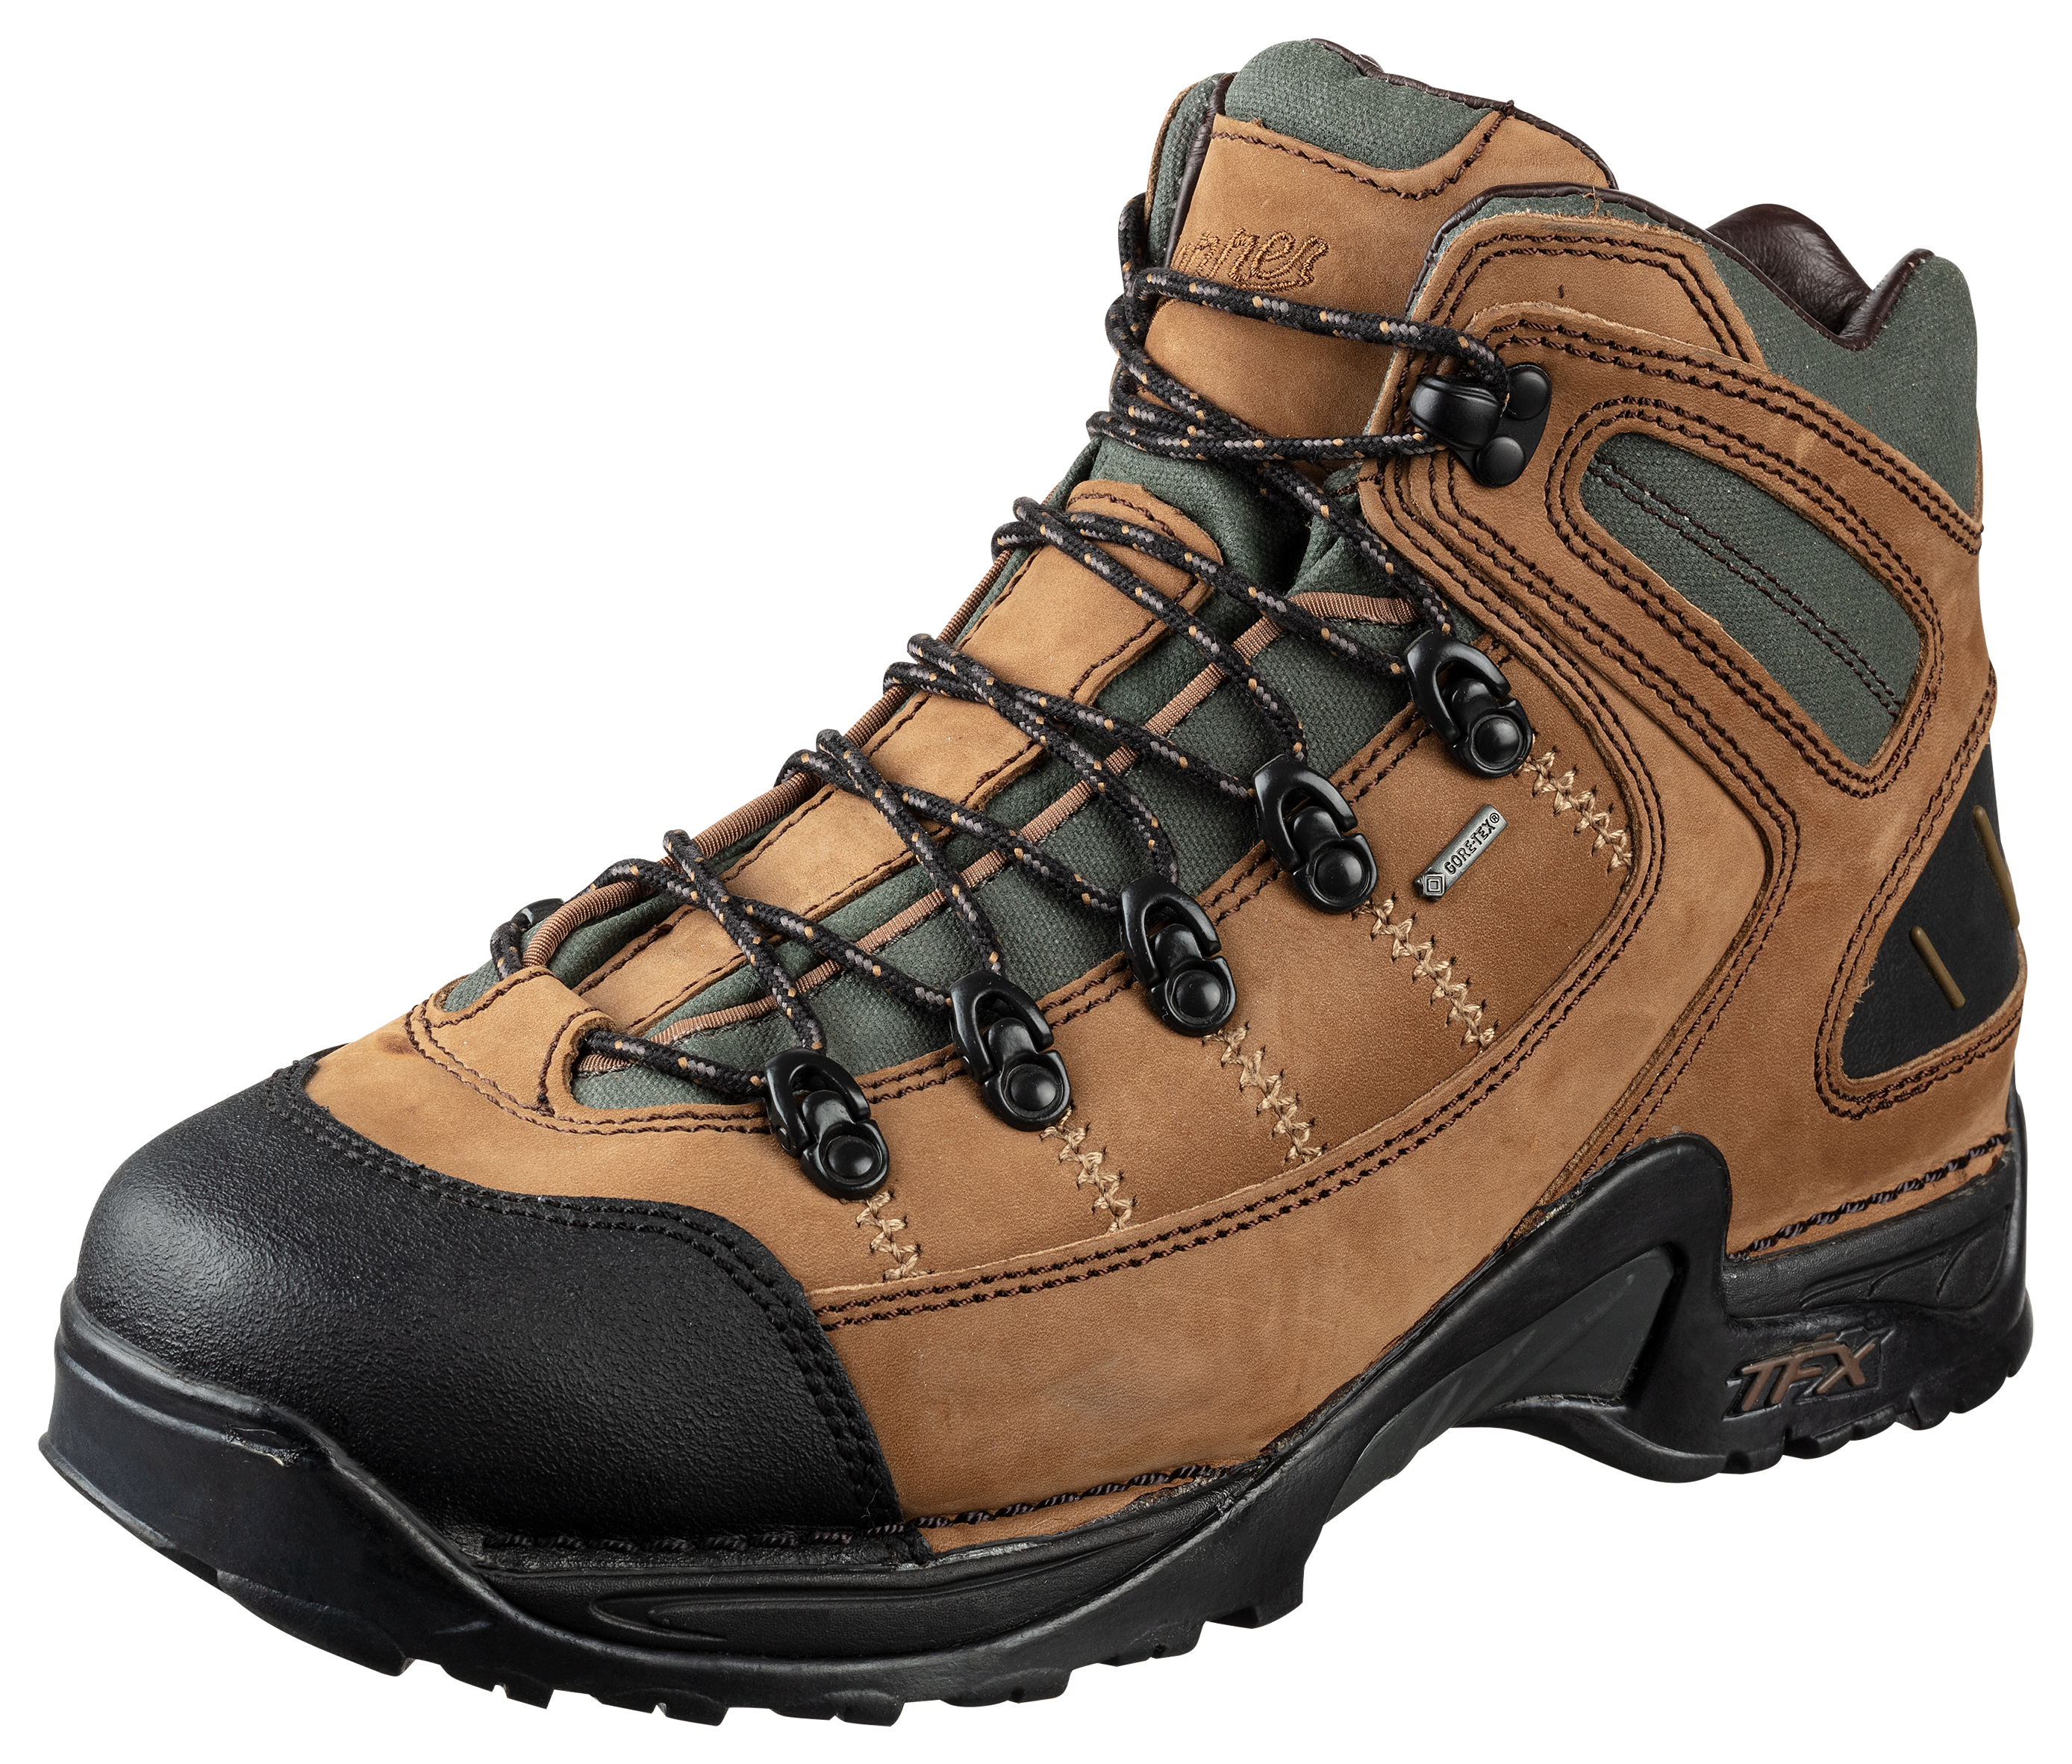 Danner 453 GORE-TEX Waterproof Hiking Boots for Men